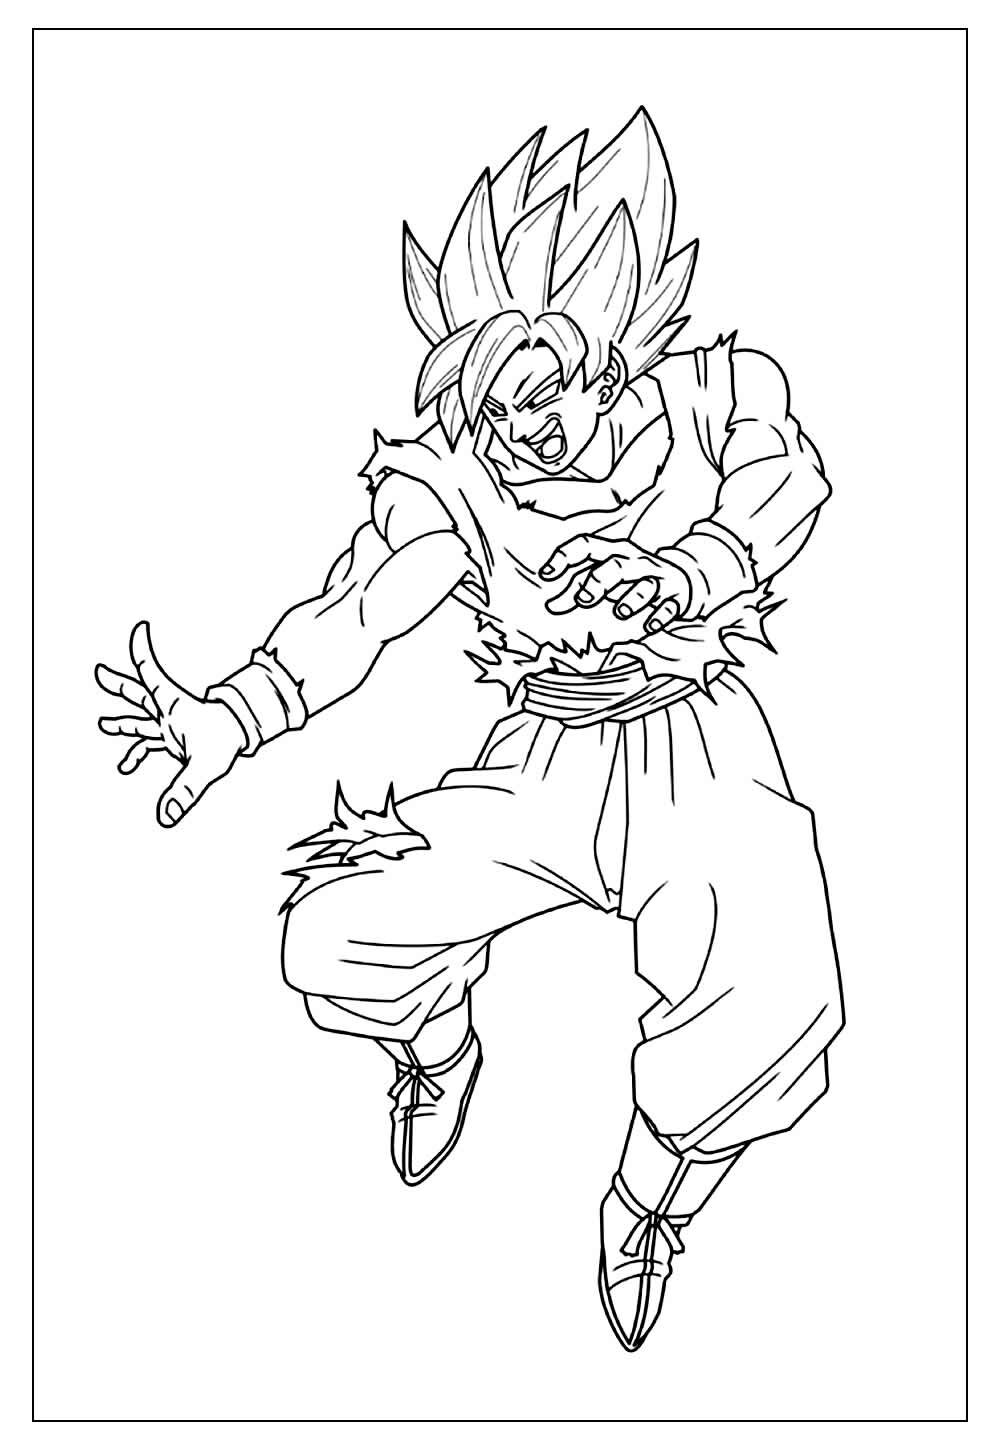 Colorir desenho do Goku